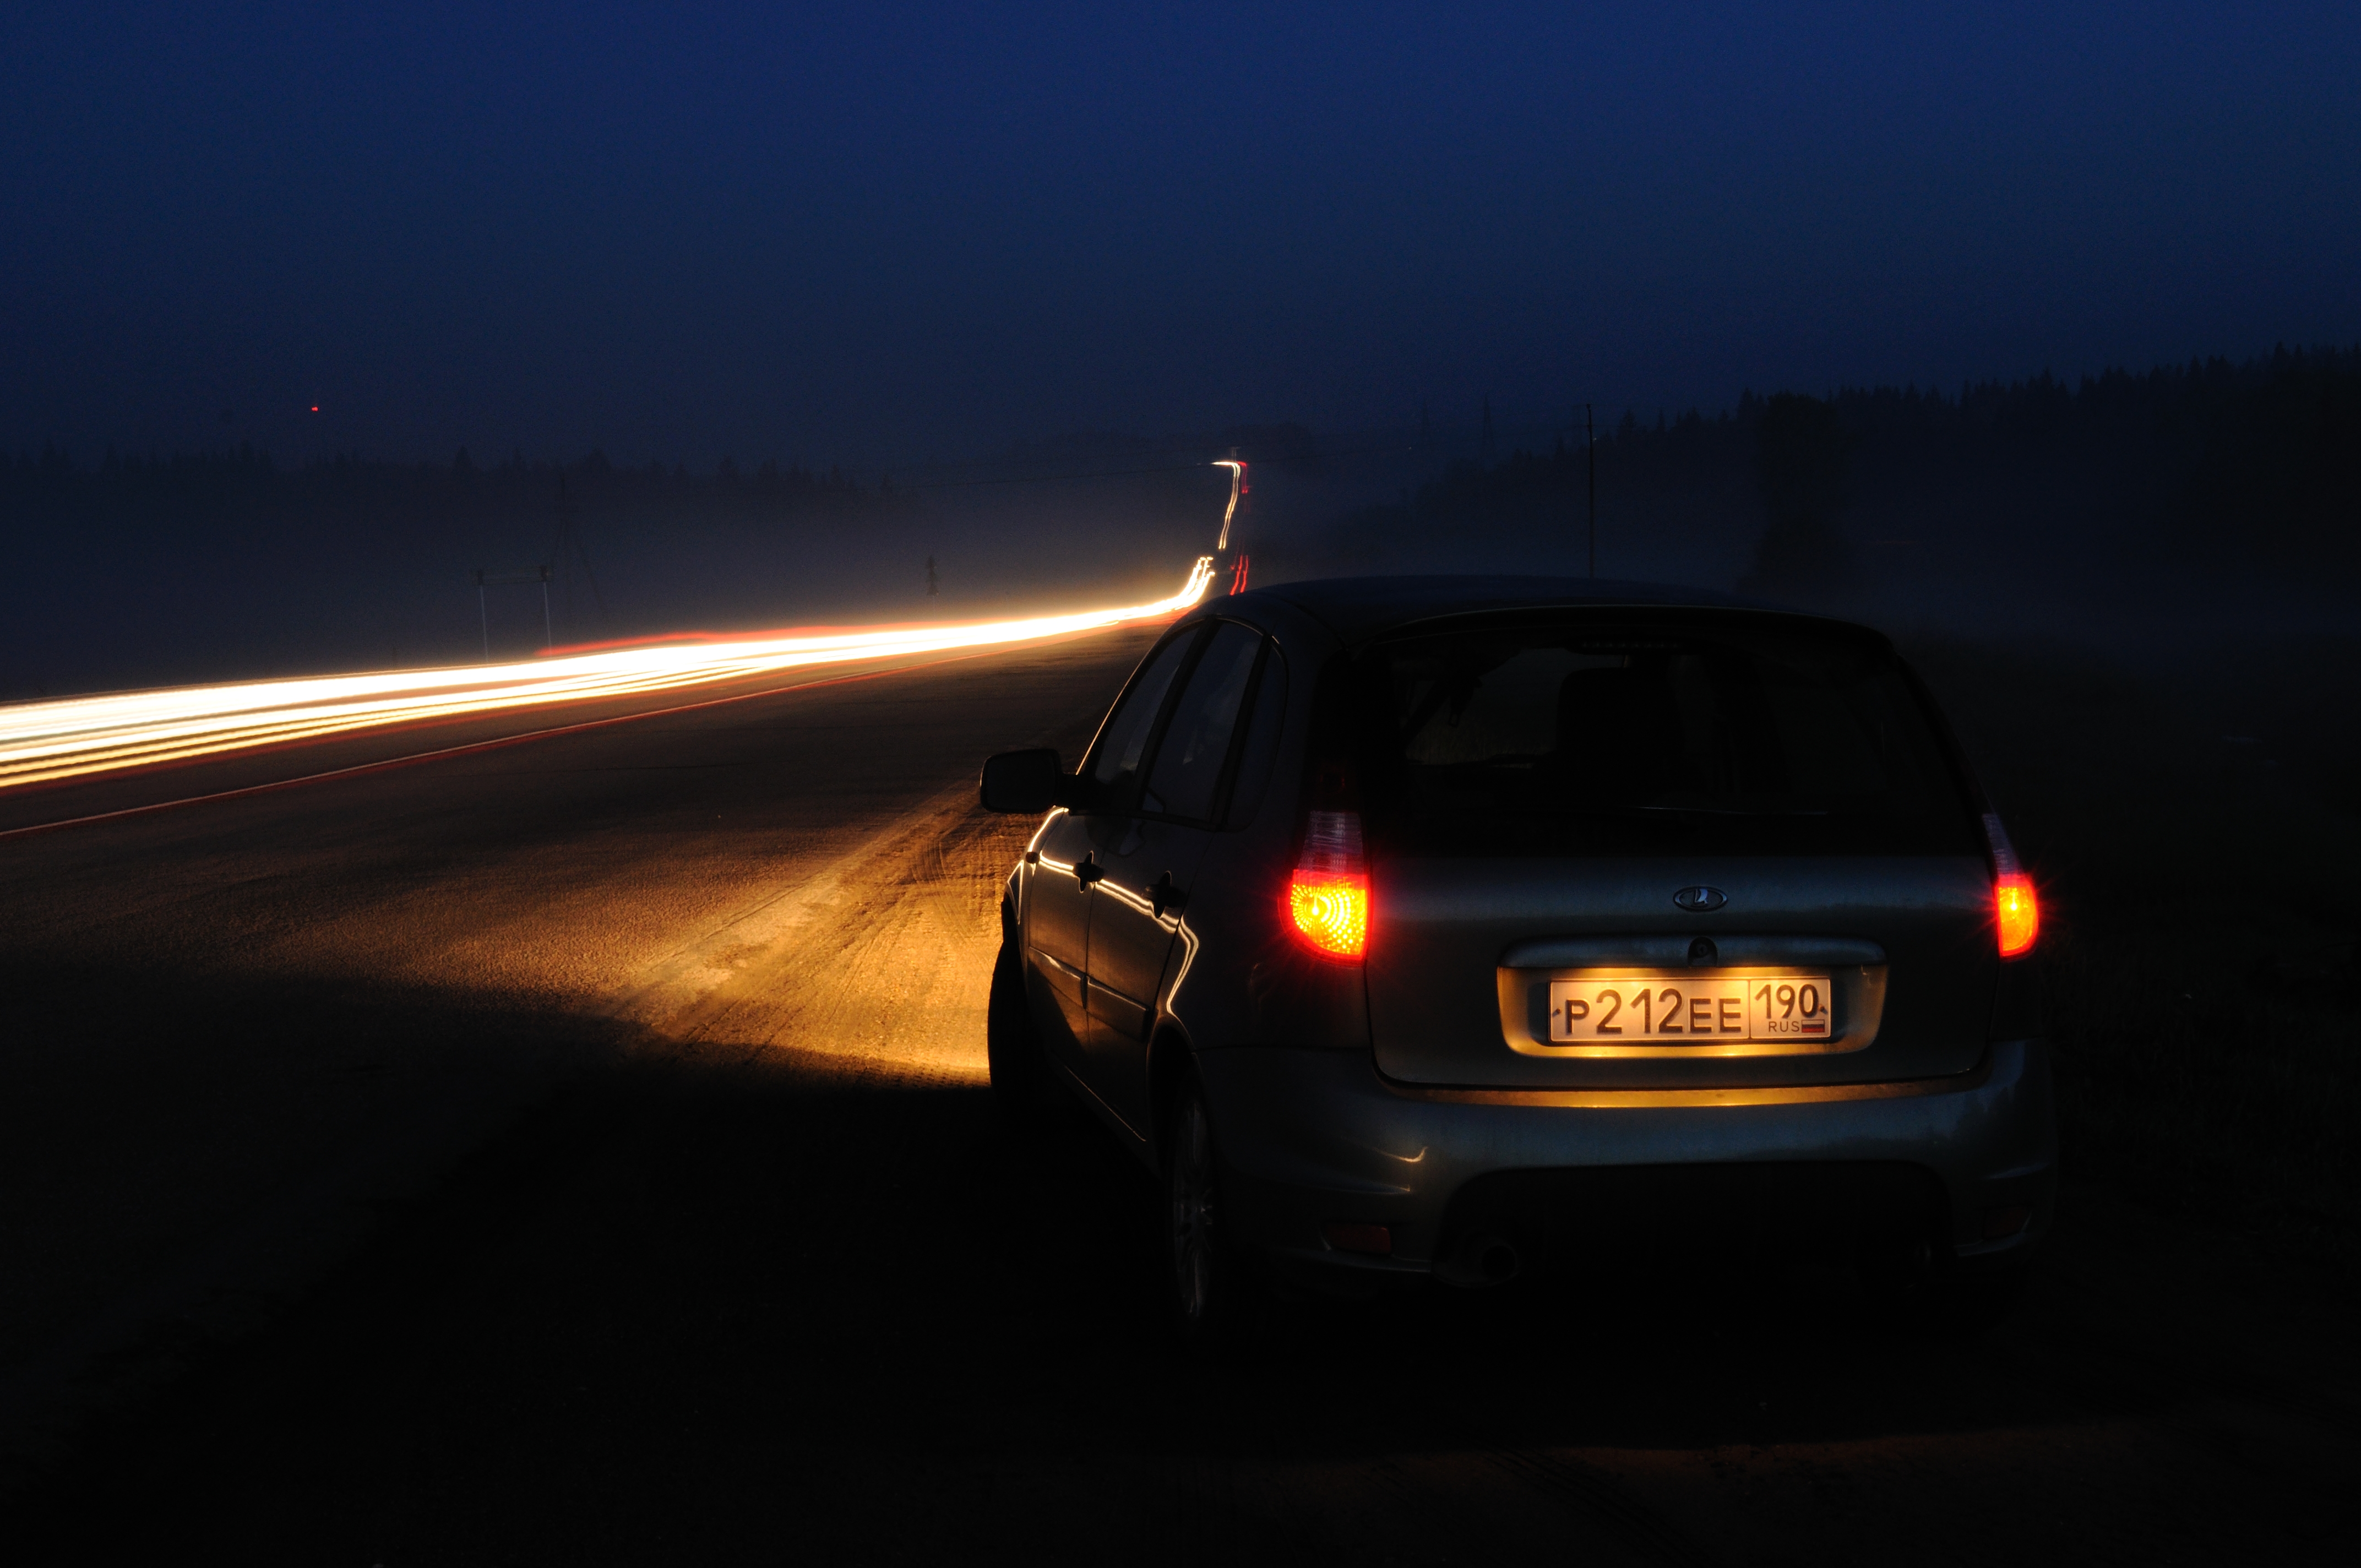 Автомобиль ночью на дороге. Машина ночью на дороге. Машина на трассе ночью. Ночь трасса машина. Фары автомобиля ночью.